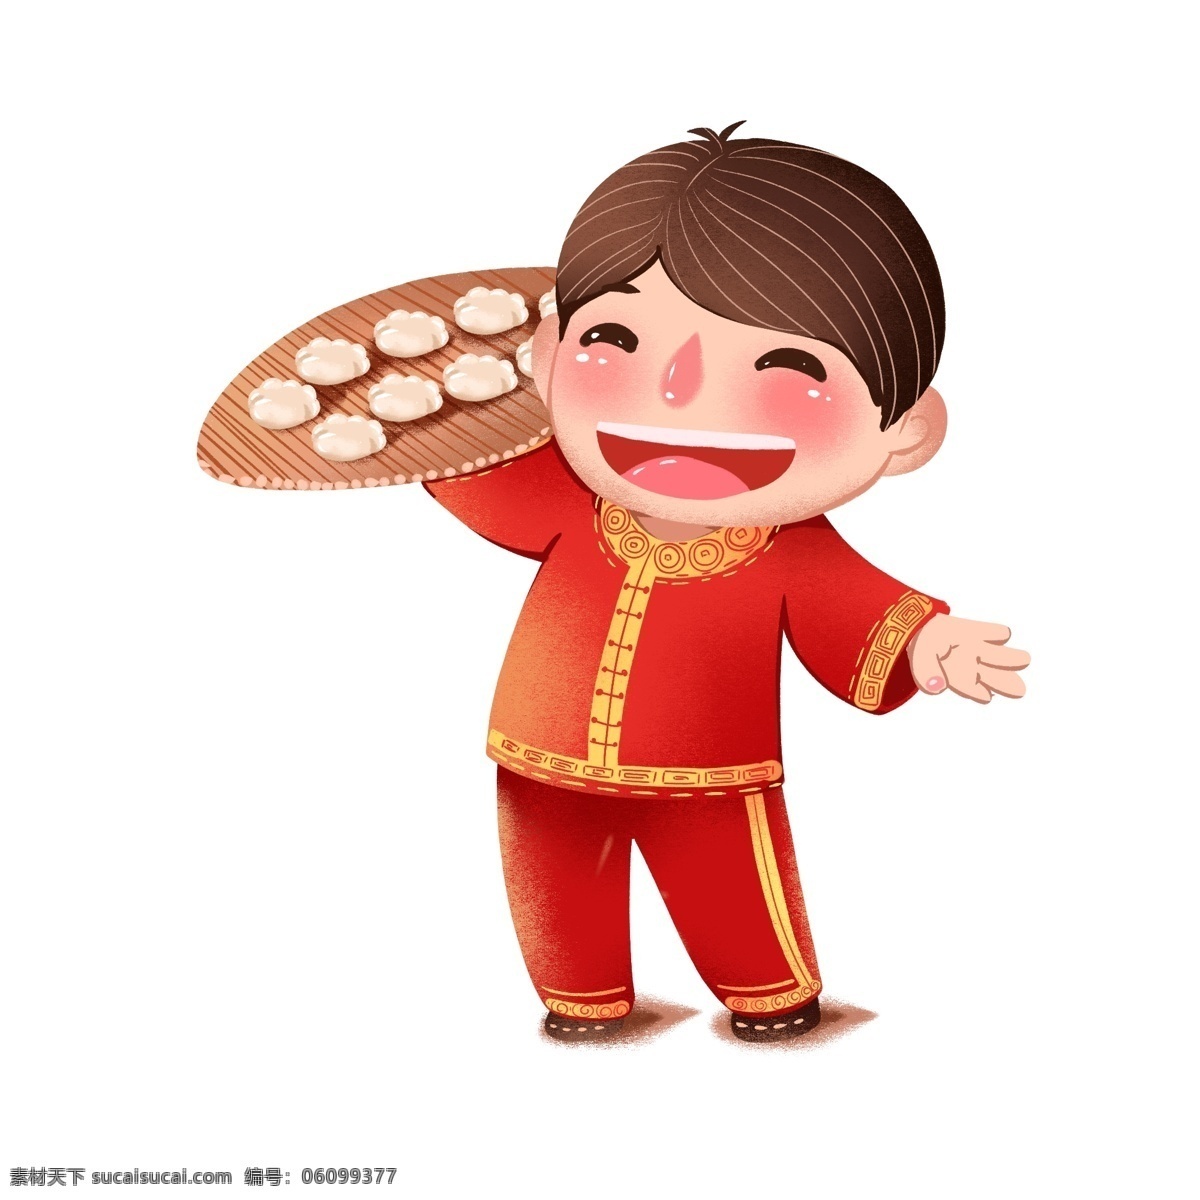 春节 立冬 冬至 吃 饺子 插图 商用 元素 中国风 吃饺子 饺子卡通 年俗